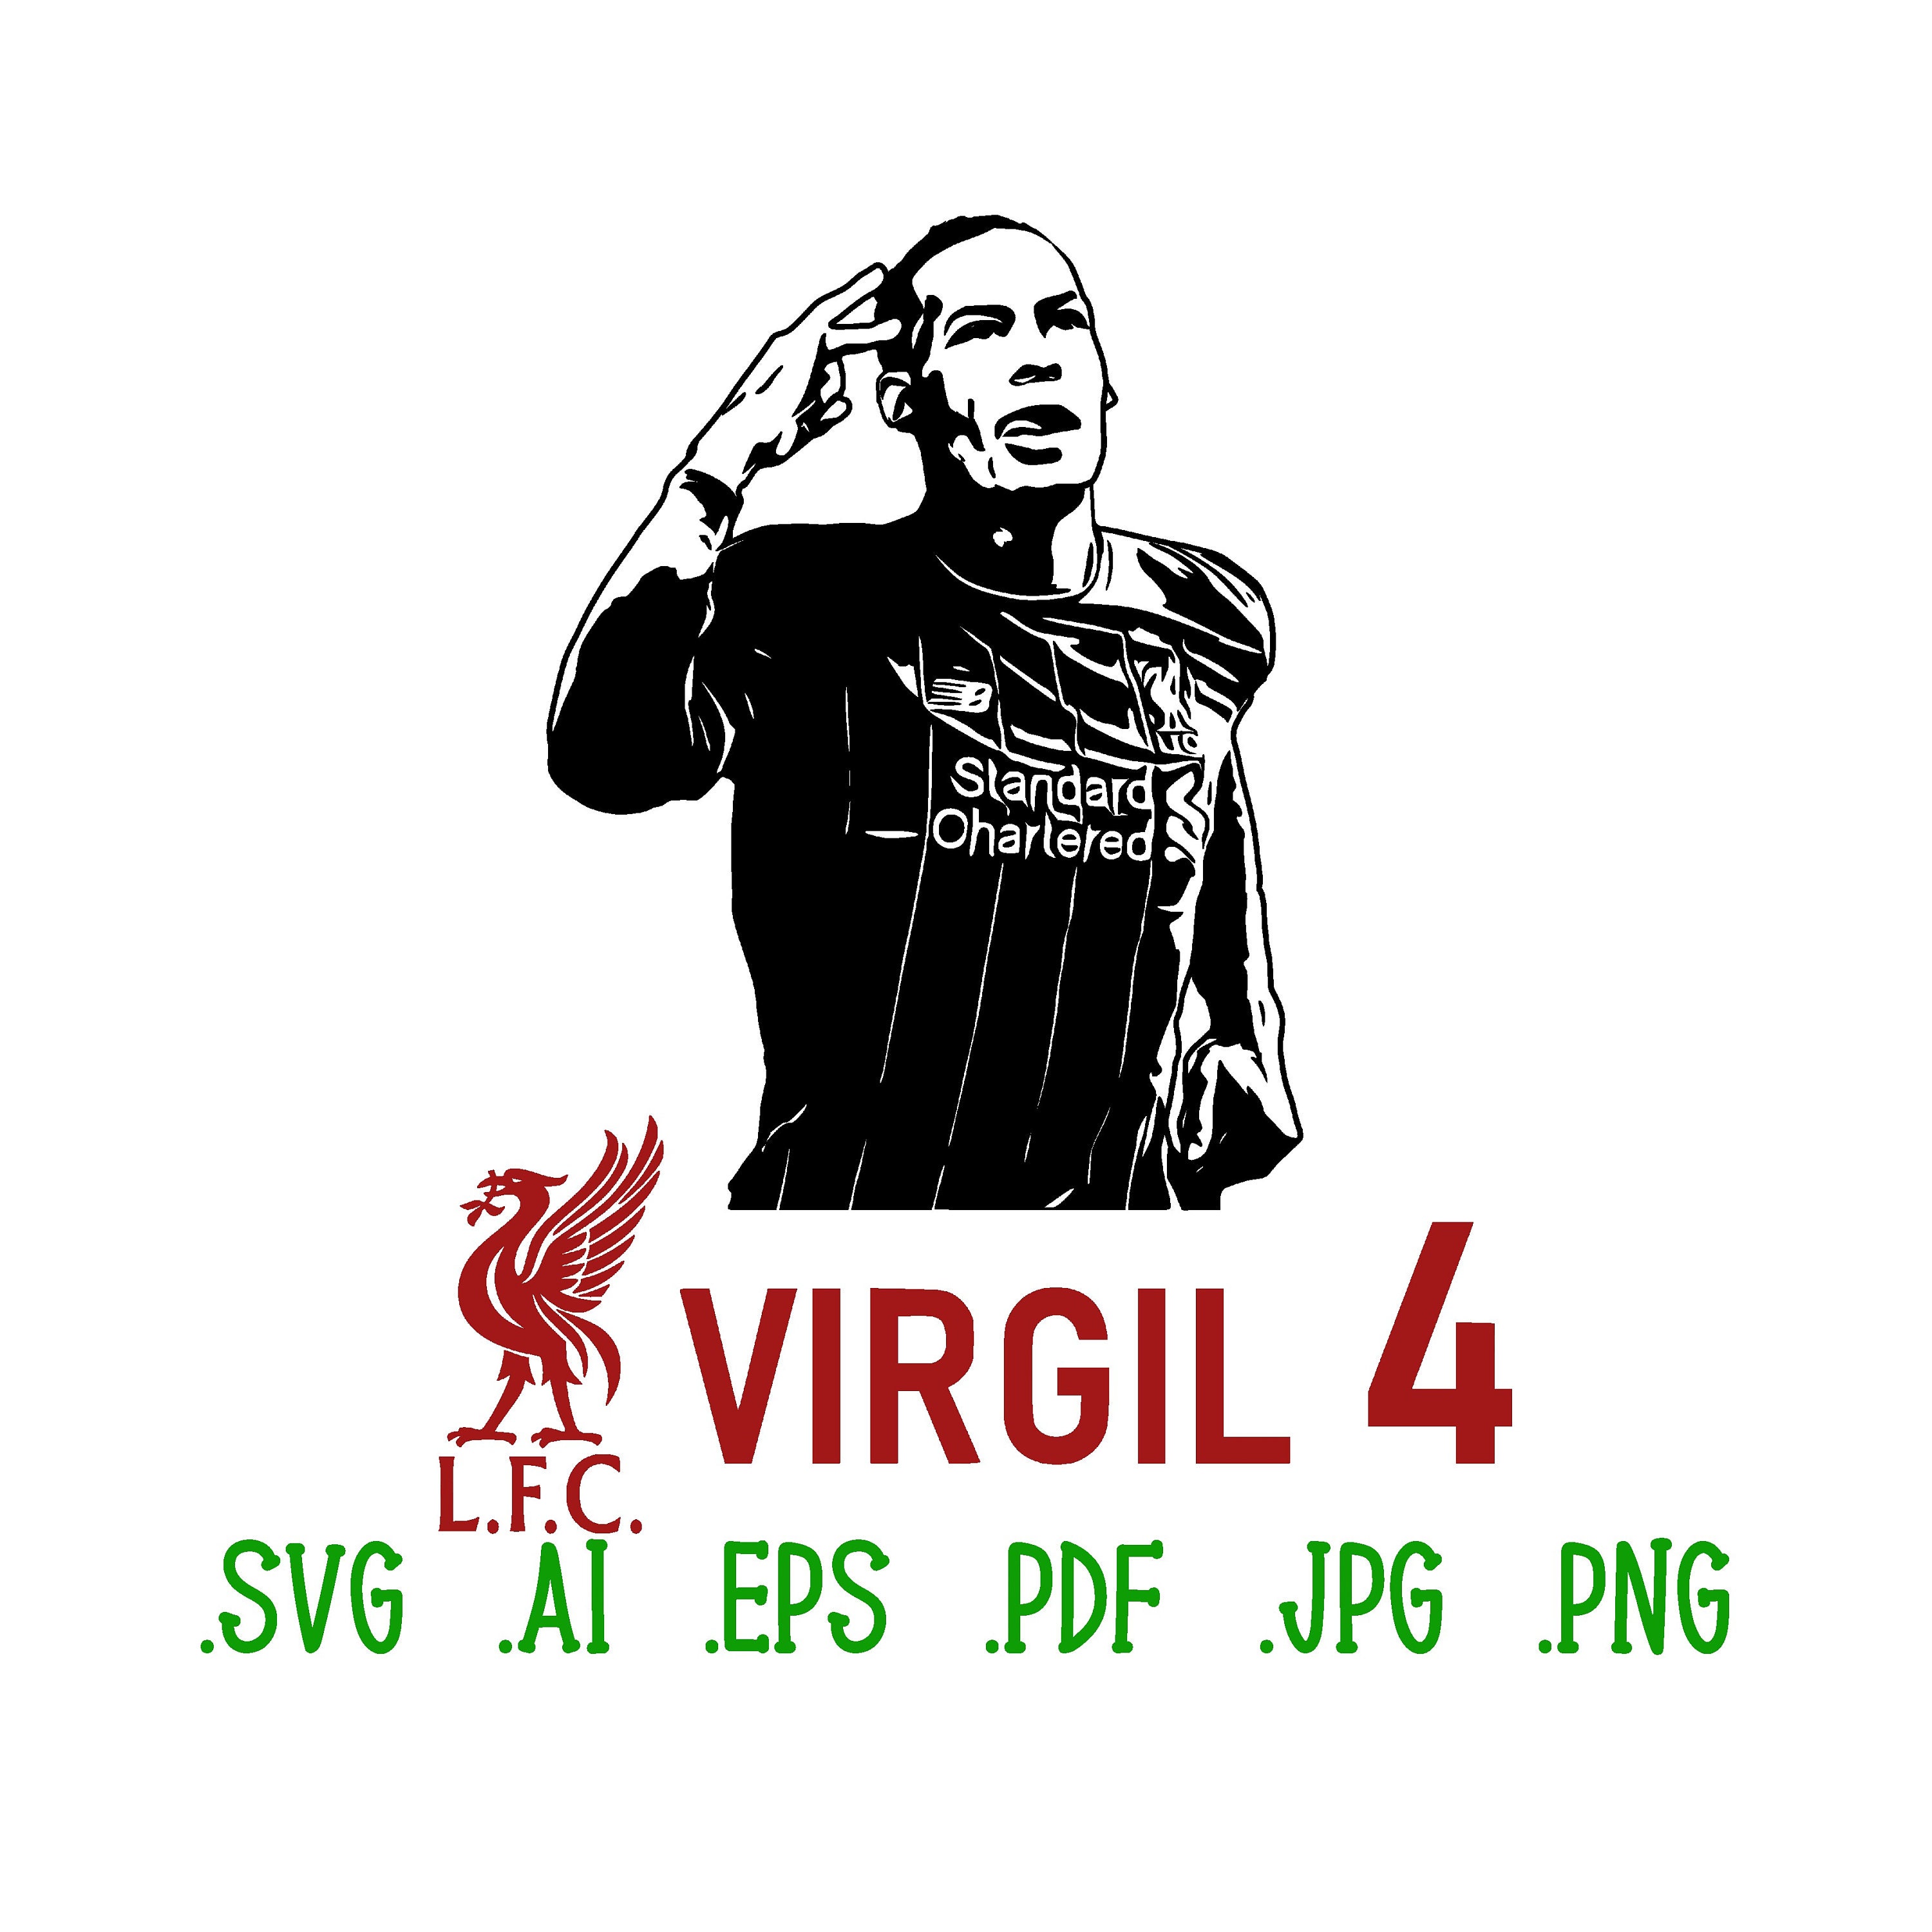 Virgil Logo PNG Transparent & SVG Vector - Freebie Supply